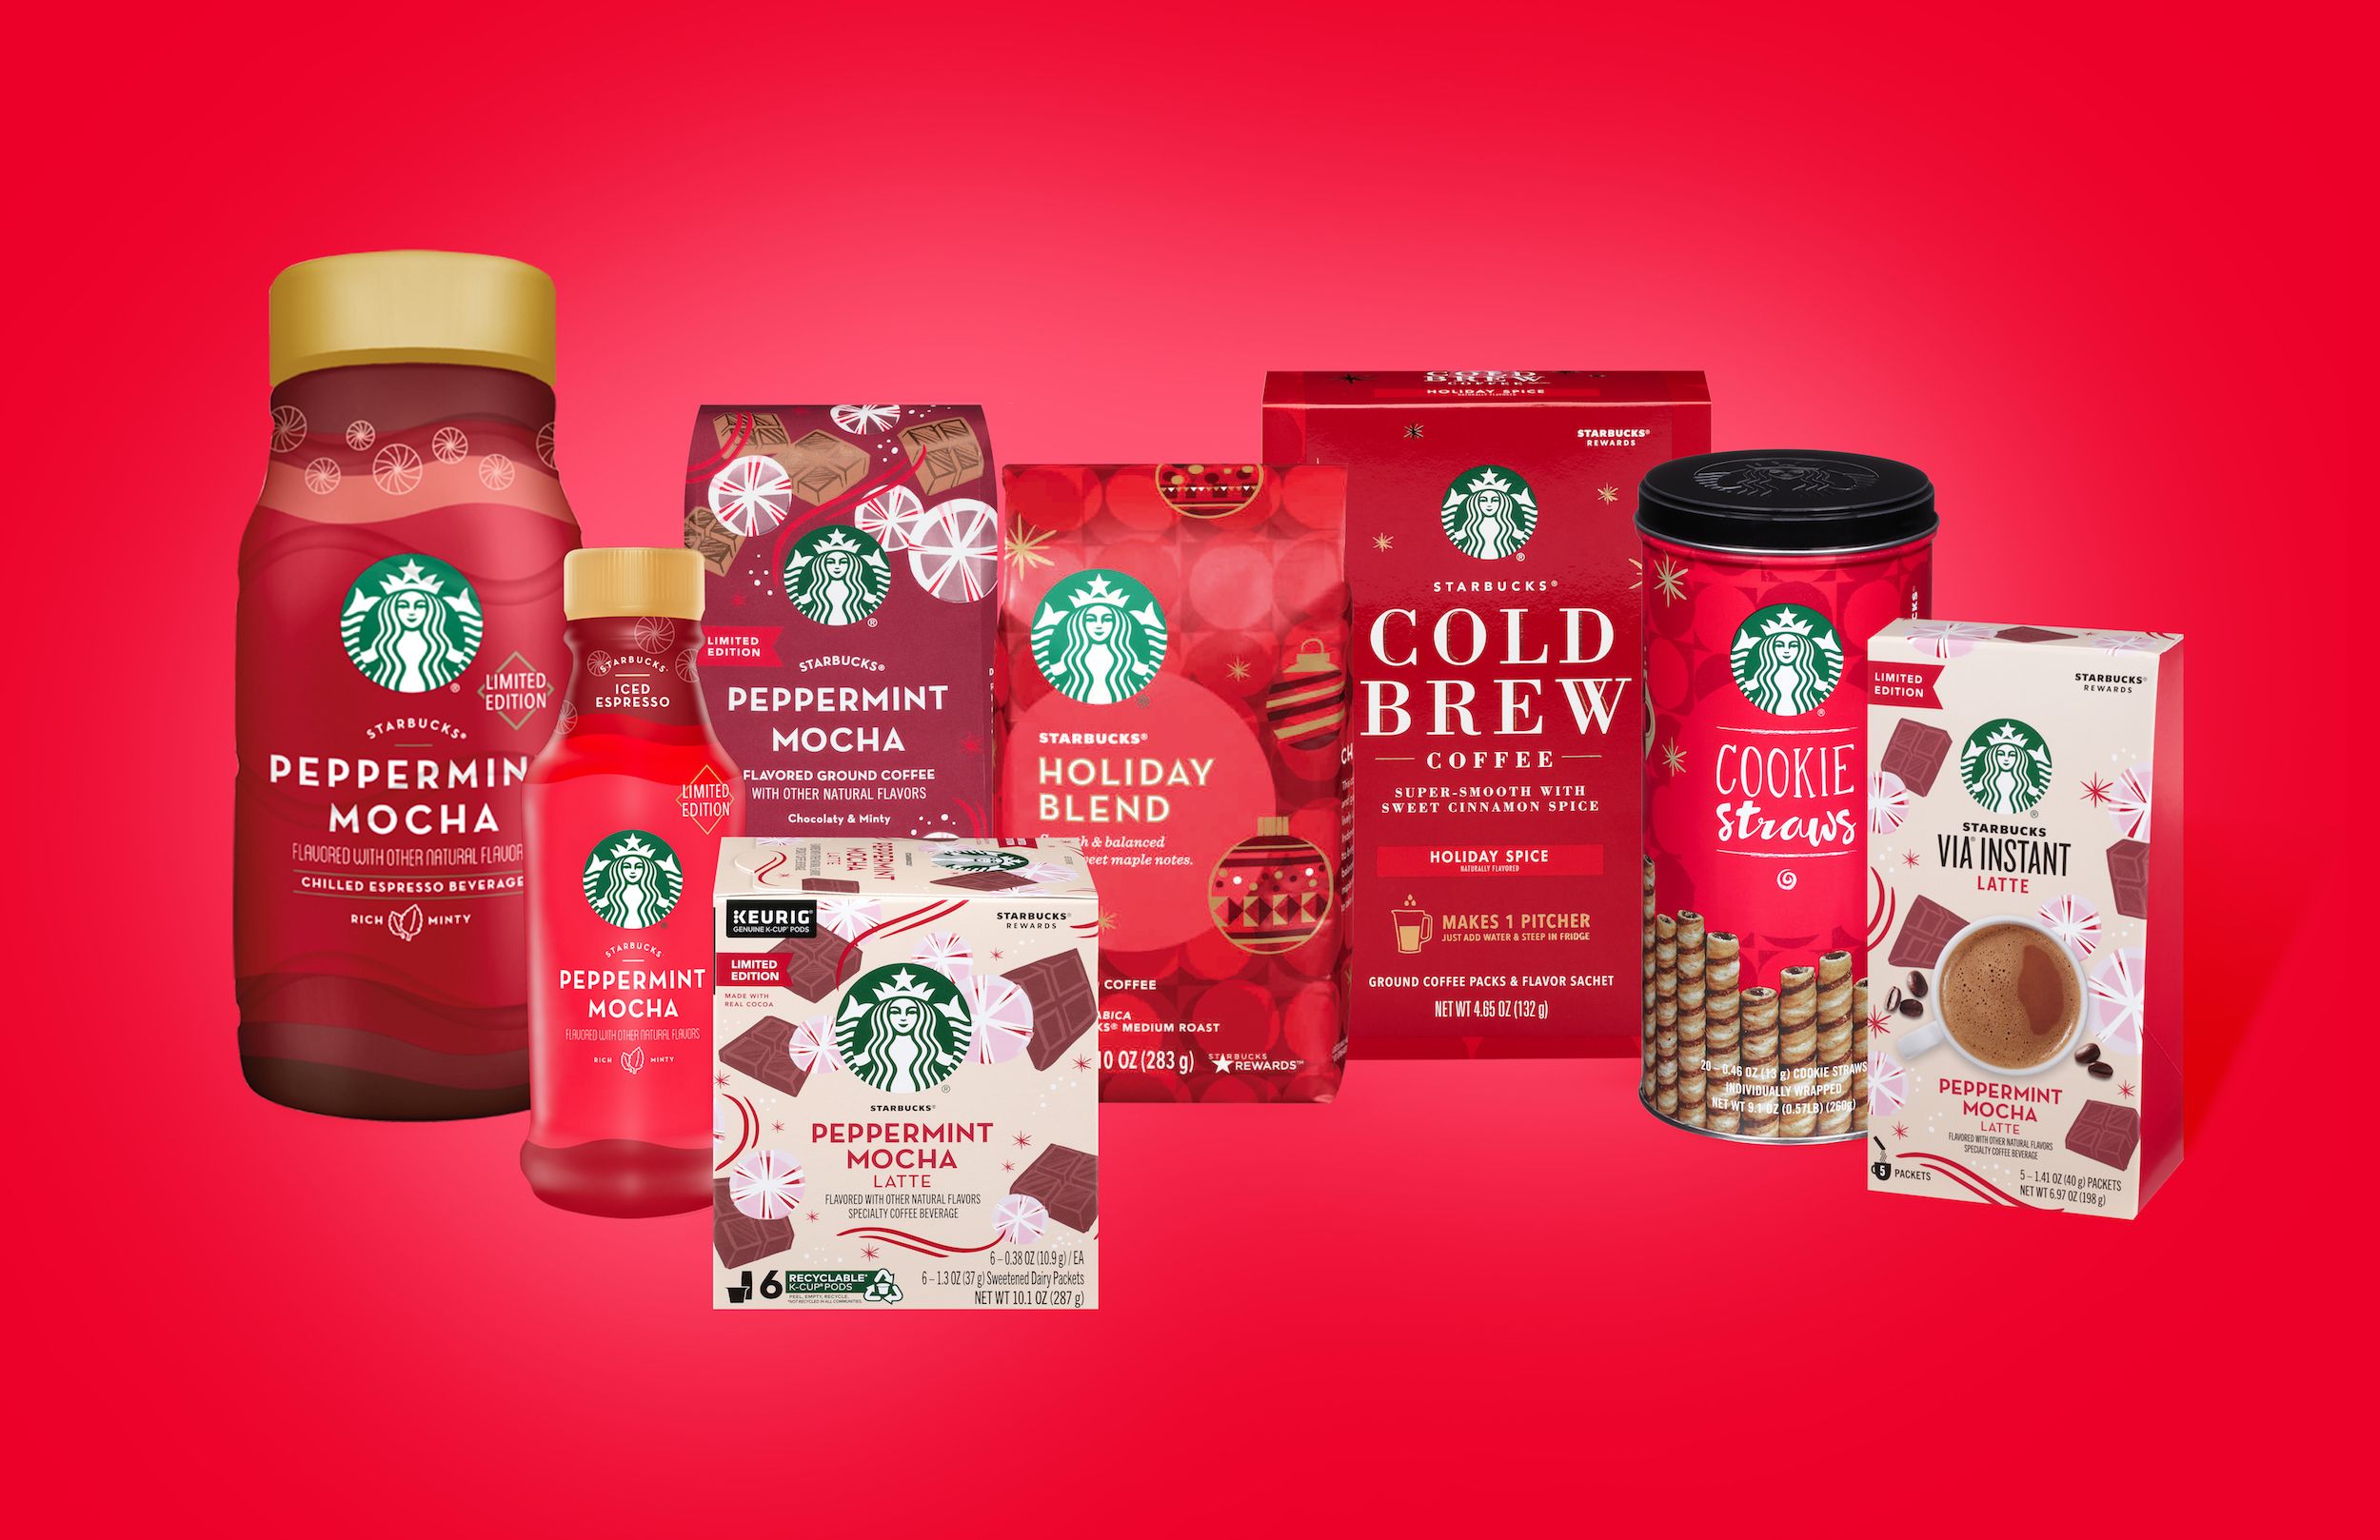 Kategori I de fleste tilfælde forvrængning Starbucks' 2019 Holiday Blend K-Cups And Coffees Are Back In Stores